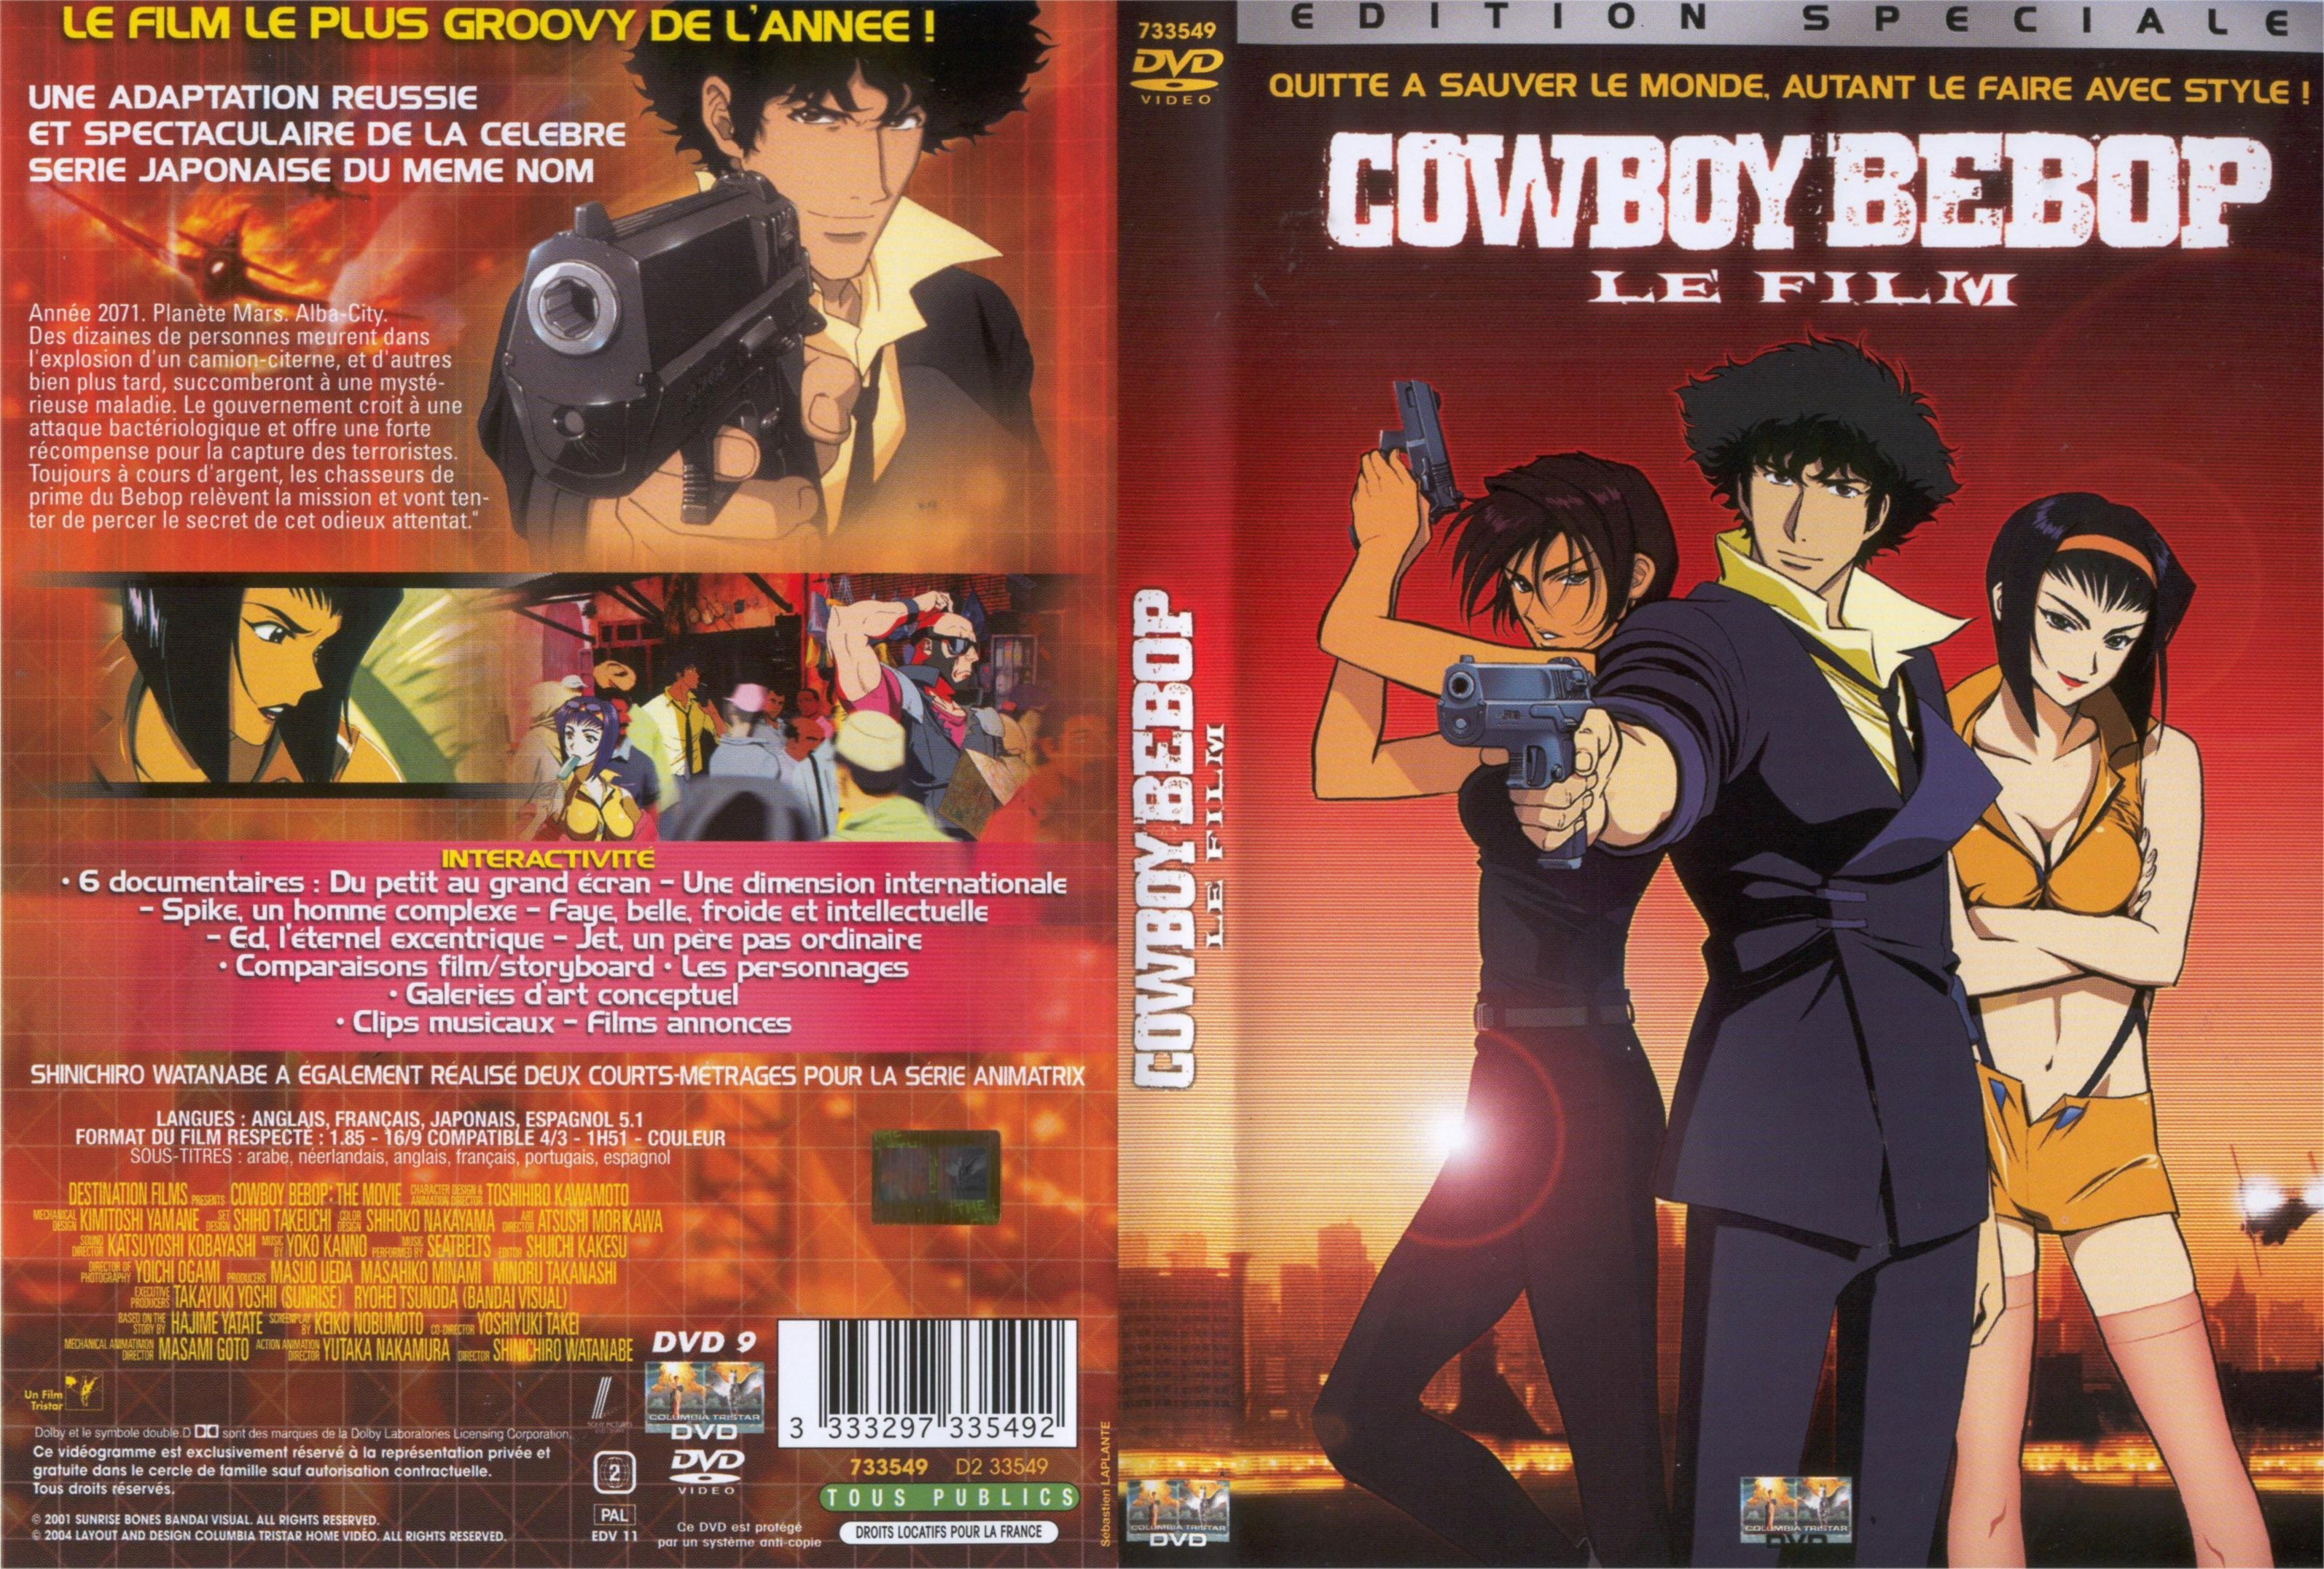 Jaquette DVD de Cowboy Bebop le film - Cinéma Passion